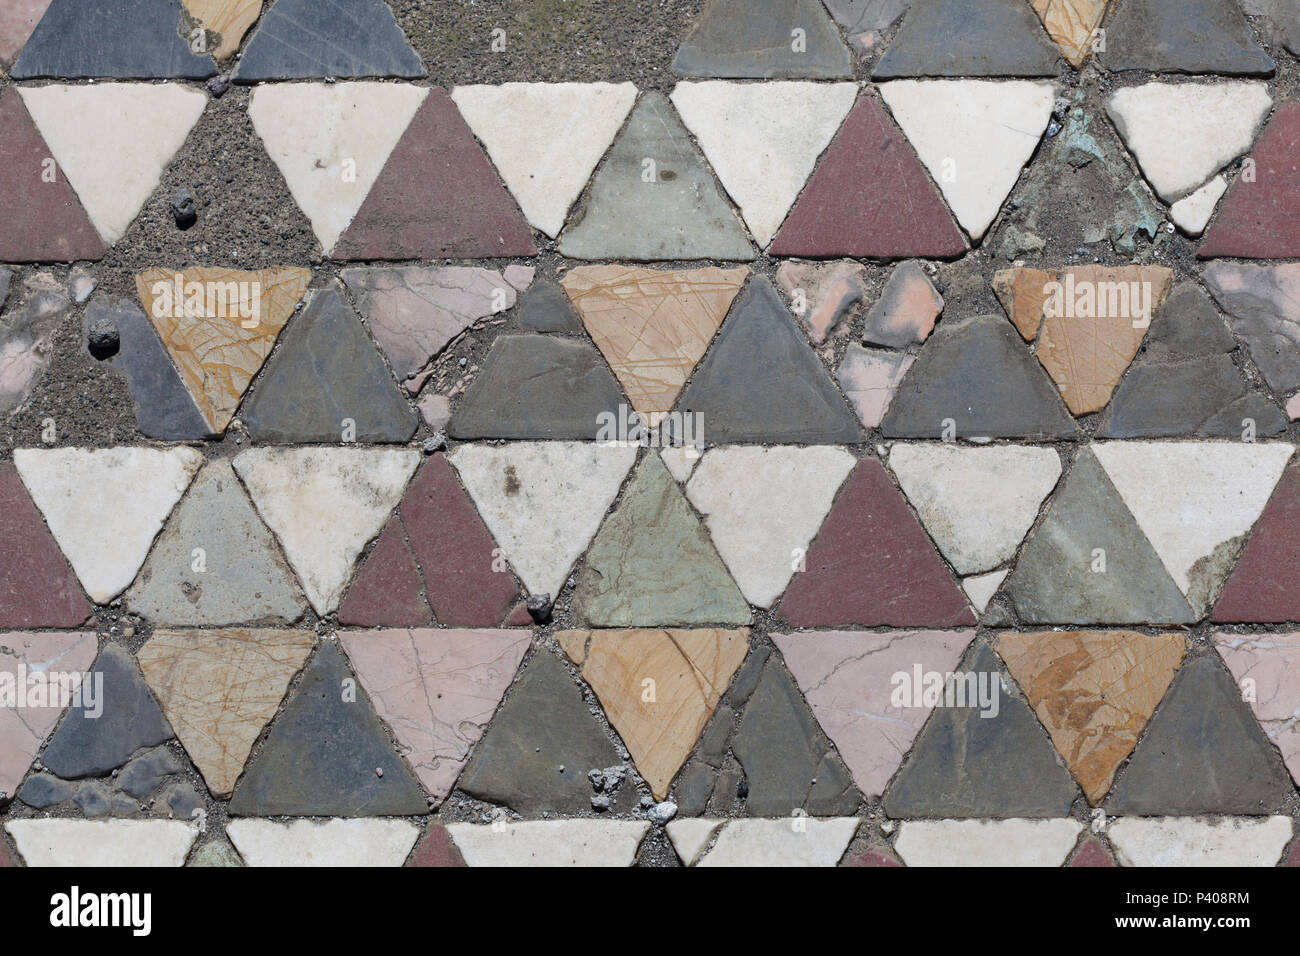 Marmor Mosaik Boden in Opus sectile Technik im Haus des Faun (Casa del Fauno) in die archäologische Stätte von Pompeji (Pompei) in der Nähe von Neapel, Kampanien, Italien. Stockfoto